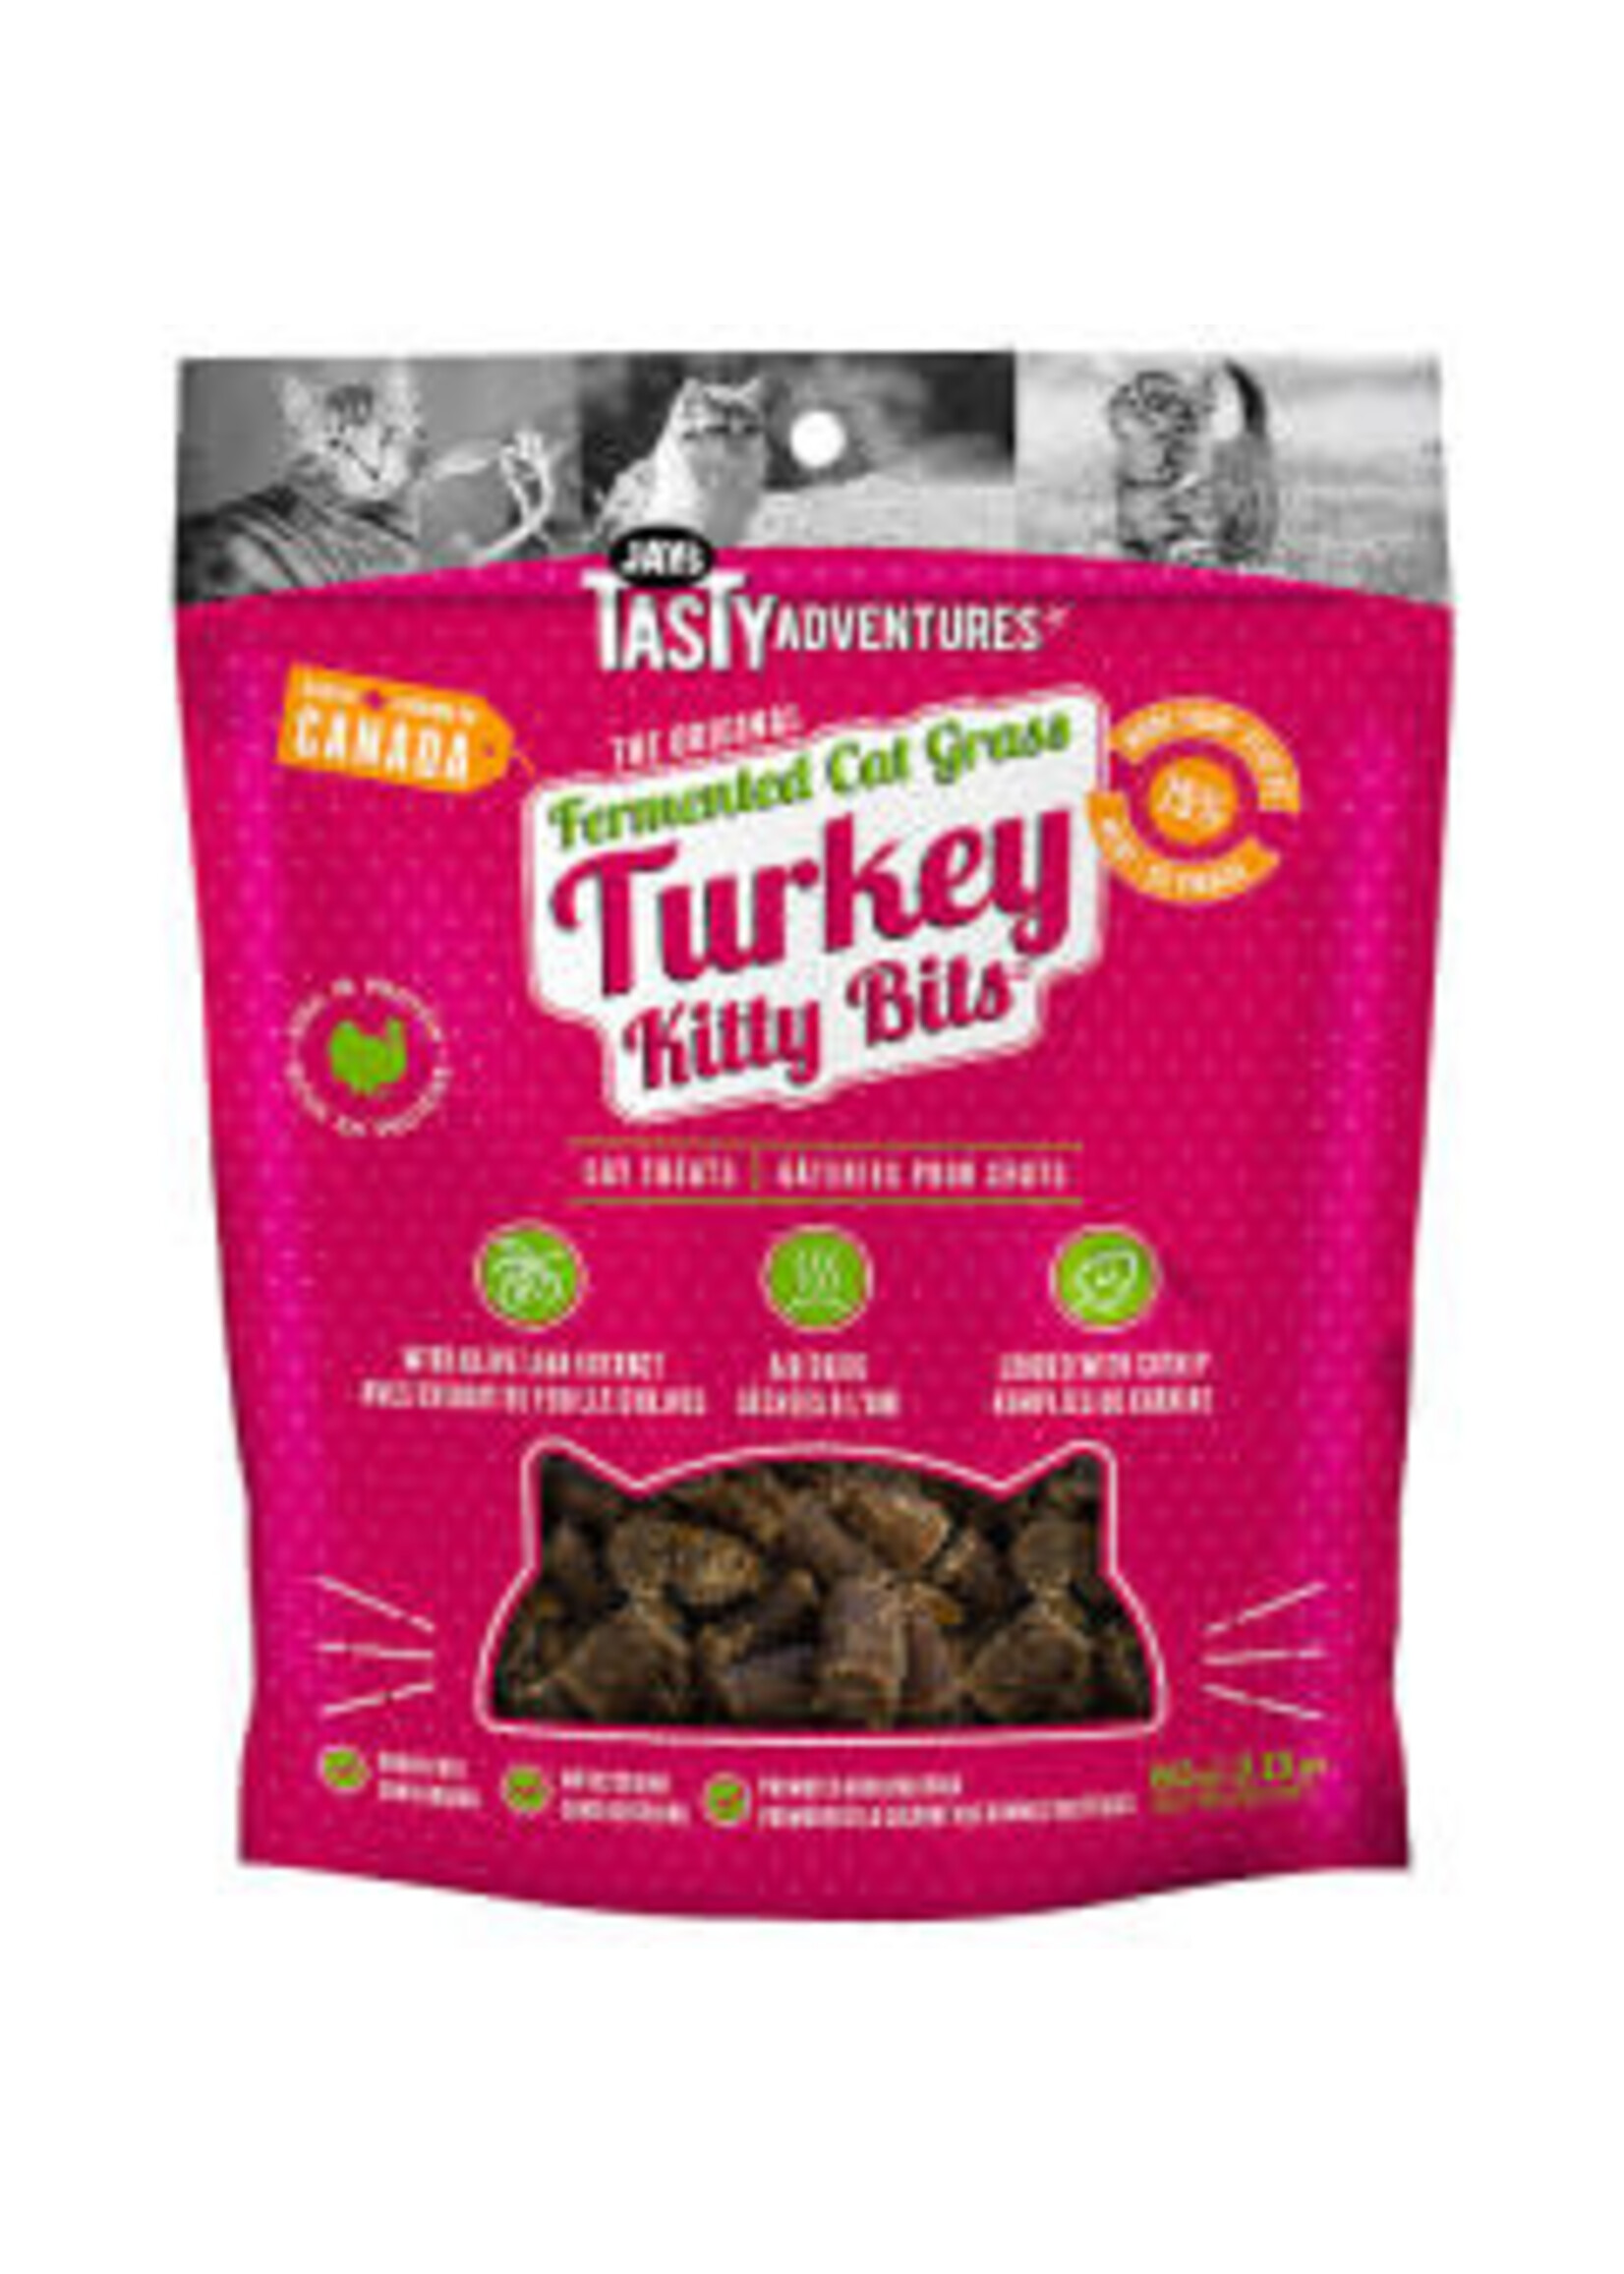 Jay's Jay's - Kitty Bits Turkey 60g